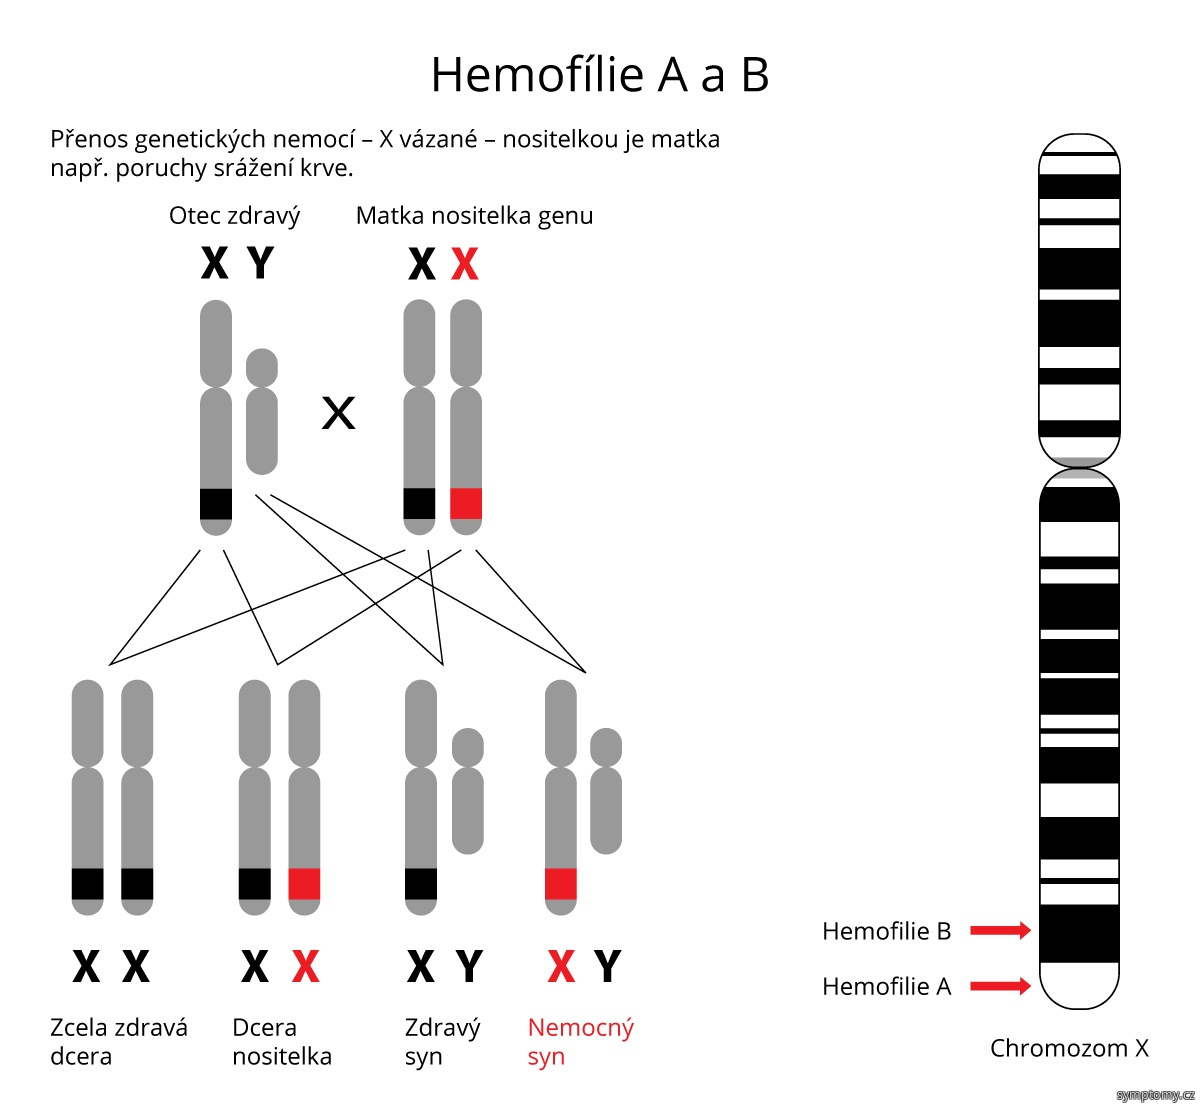 Přenos genetických nemocí - Hemofílie A a B